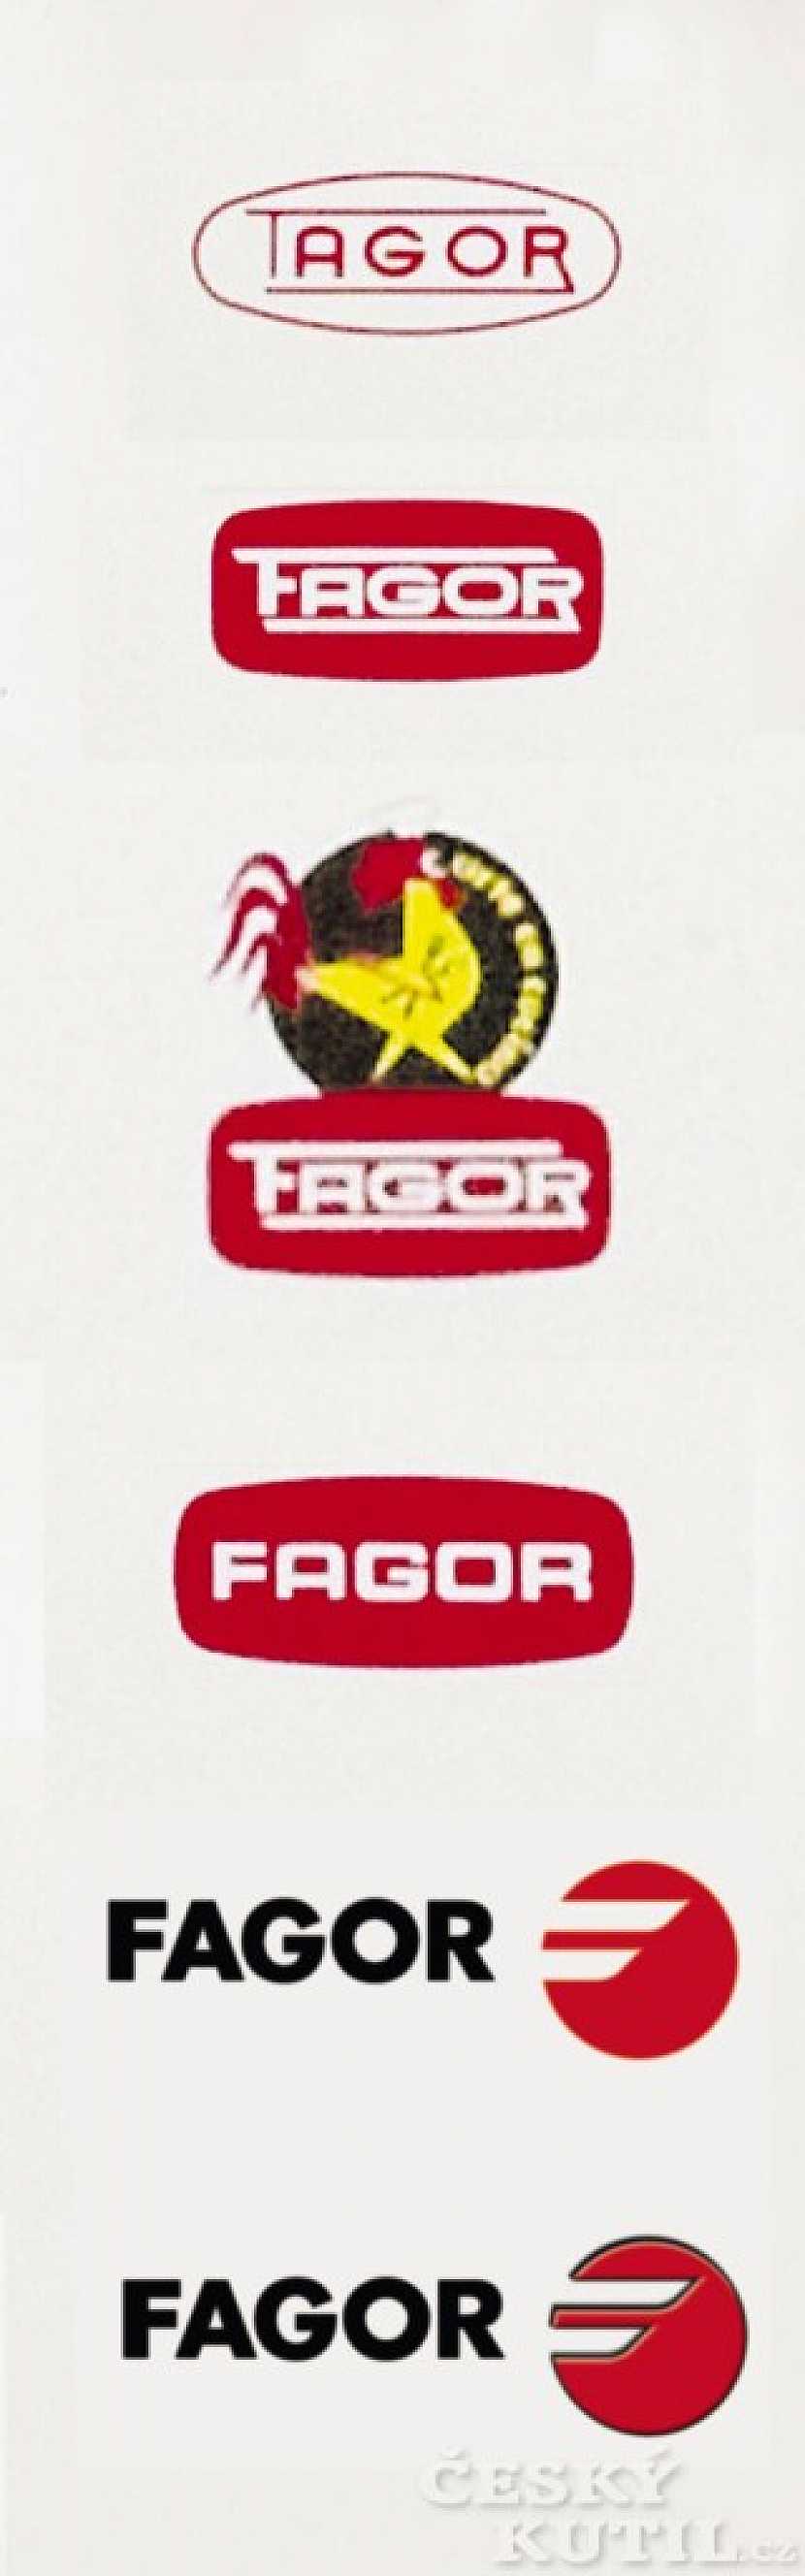 Historie firmy Fagor